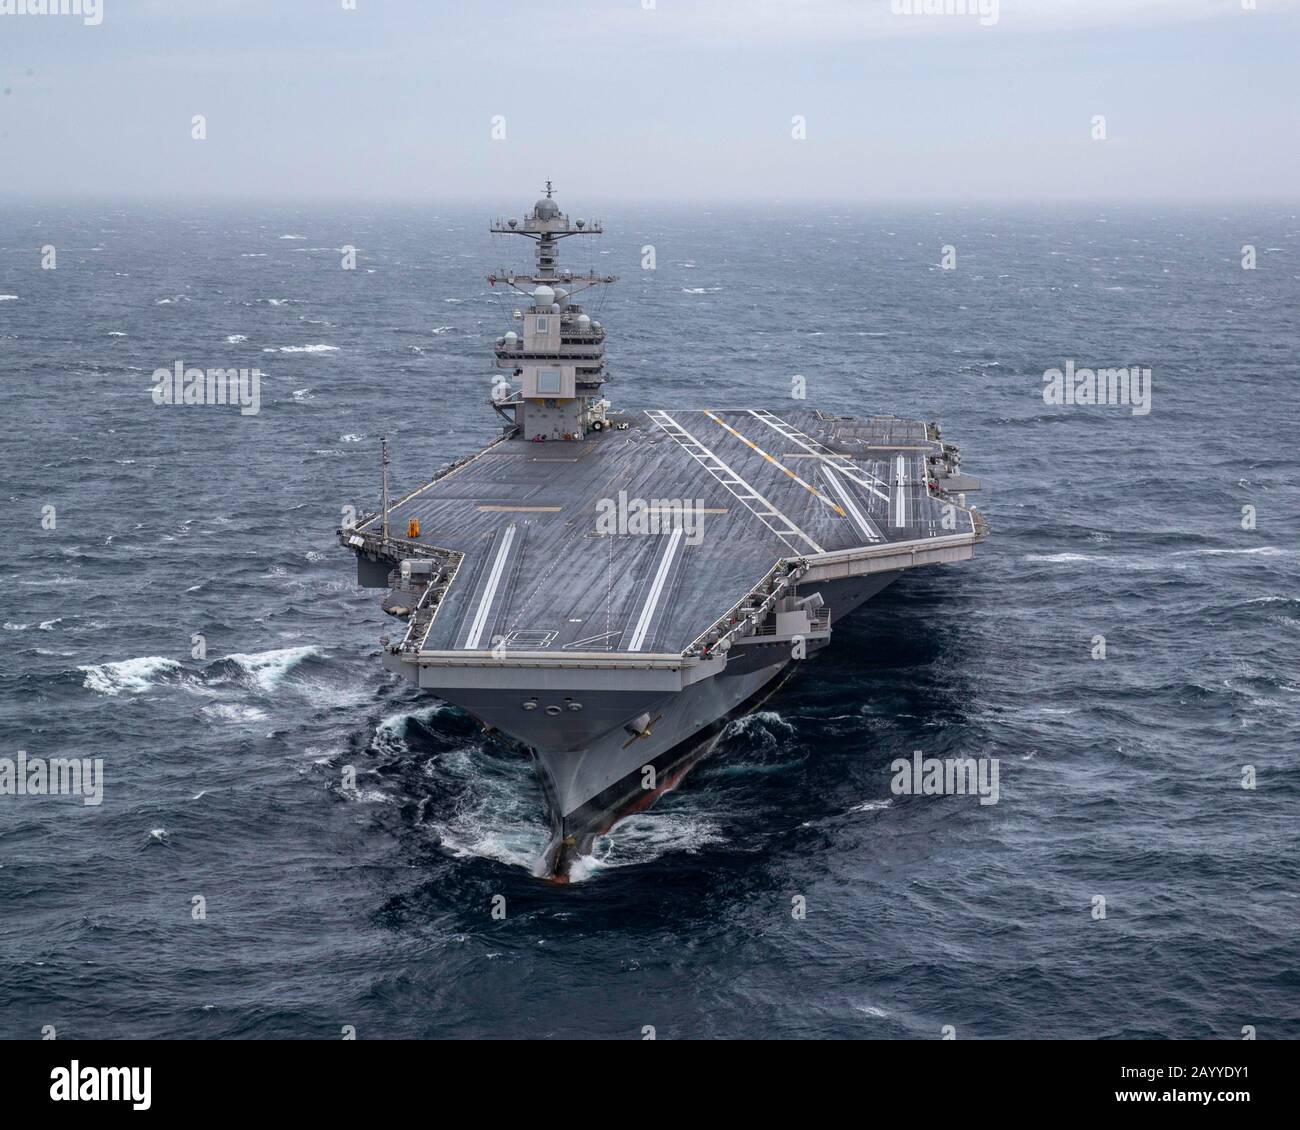 Der nuklear angetriebene Flugzeugträger USS Gerald R. Ford der US-Marine Nimitz-Klasse läuft in Seeversuchen nach einer 15-monatigen Umrüstung und einem Shakedown am 27. Oktober 2019 im Atlantik. Stockfoto